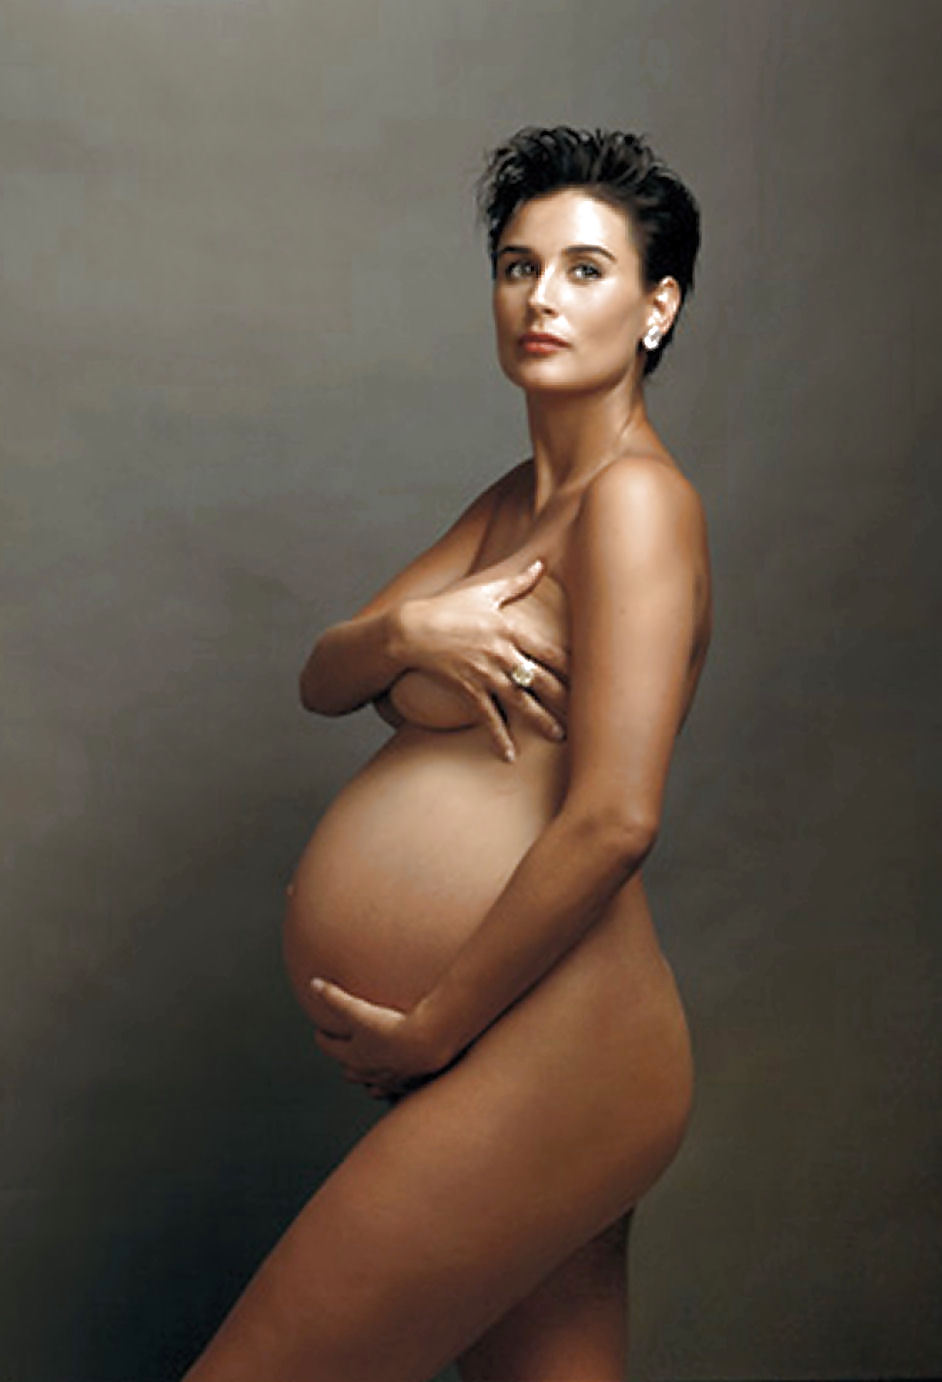 妊娠中のセレブ達 - 本物の写真 - 偽物ではない - londonlad
 #3541096